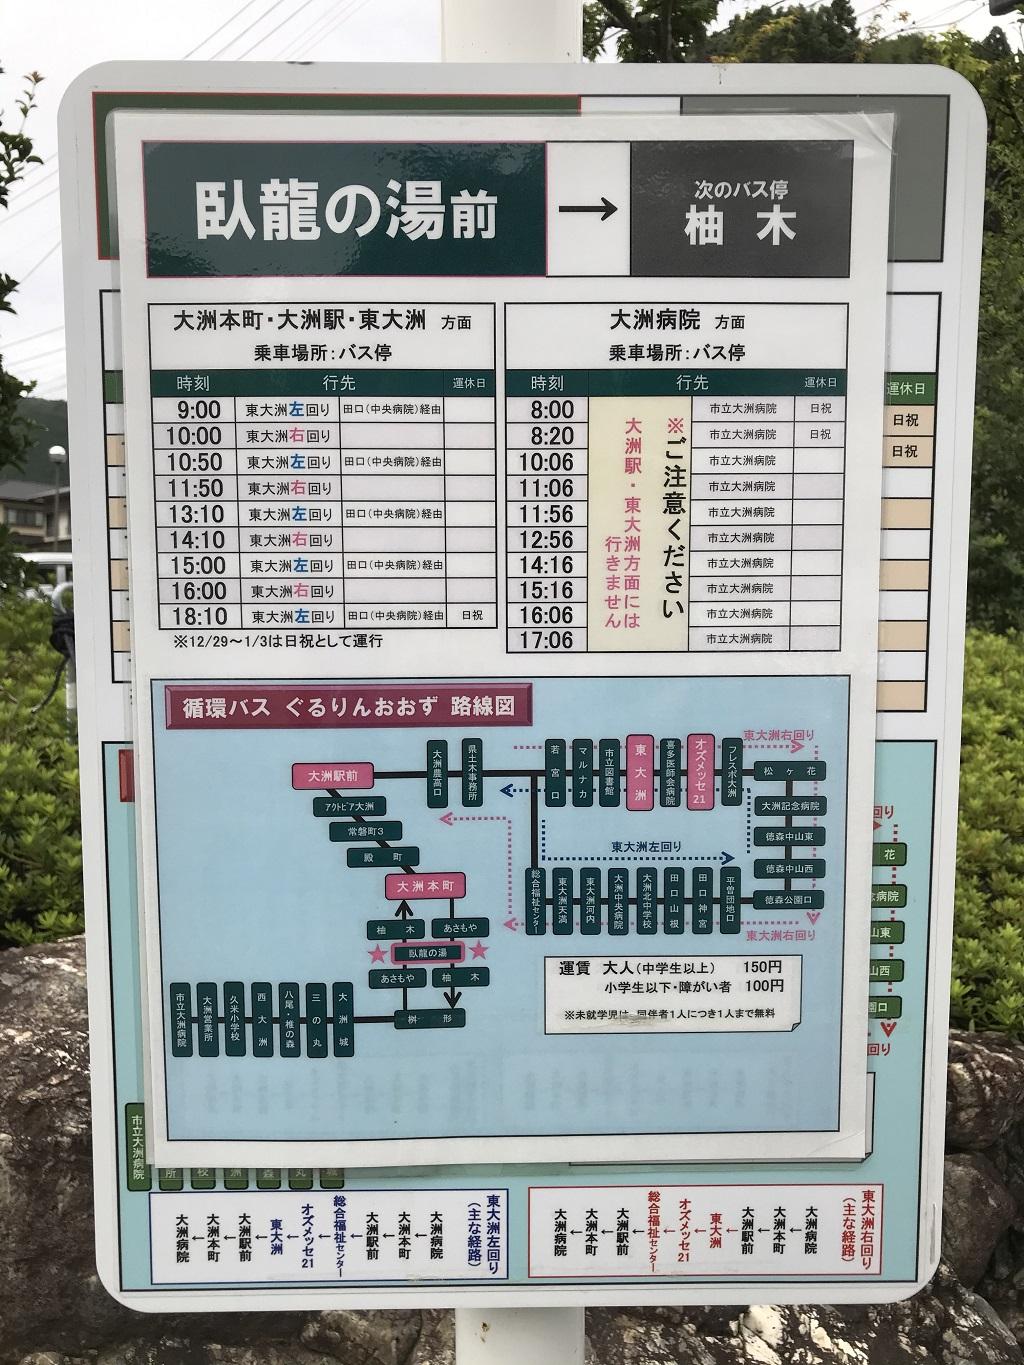 循環バス ぐるりんおおず 臥龍の湯前 バス停の時刻表と路線図